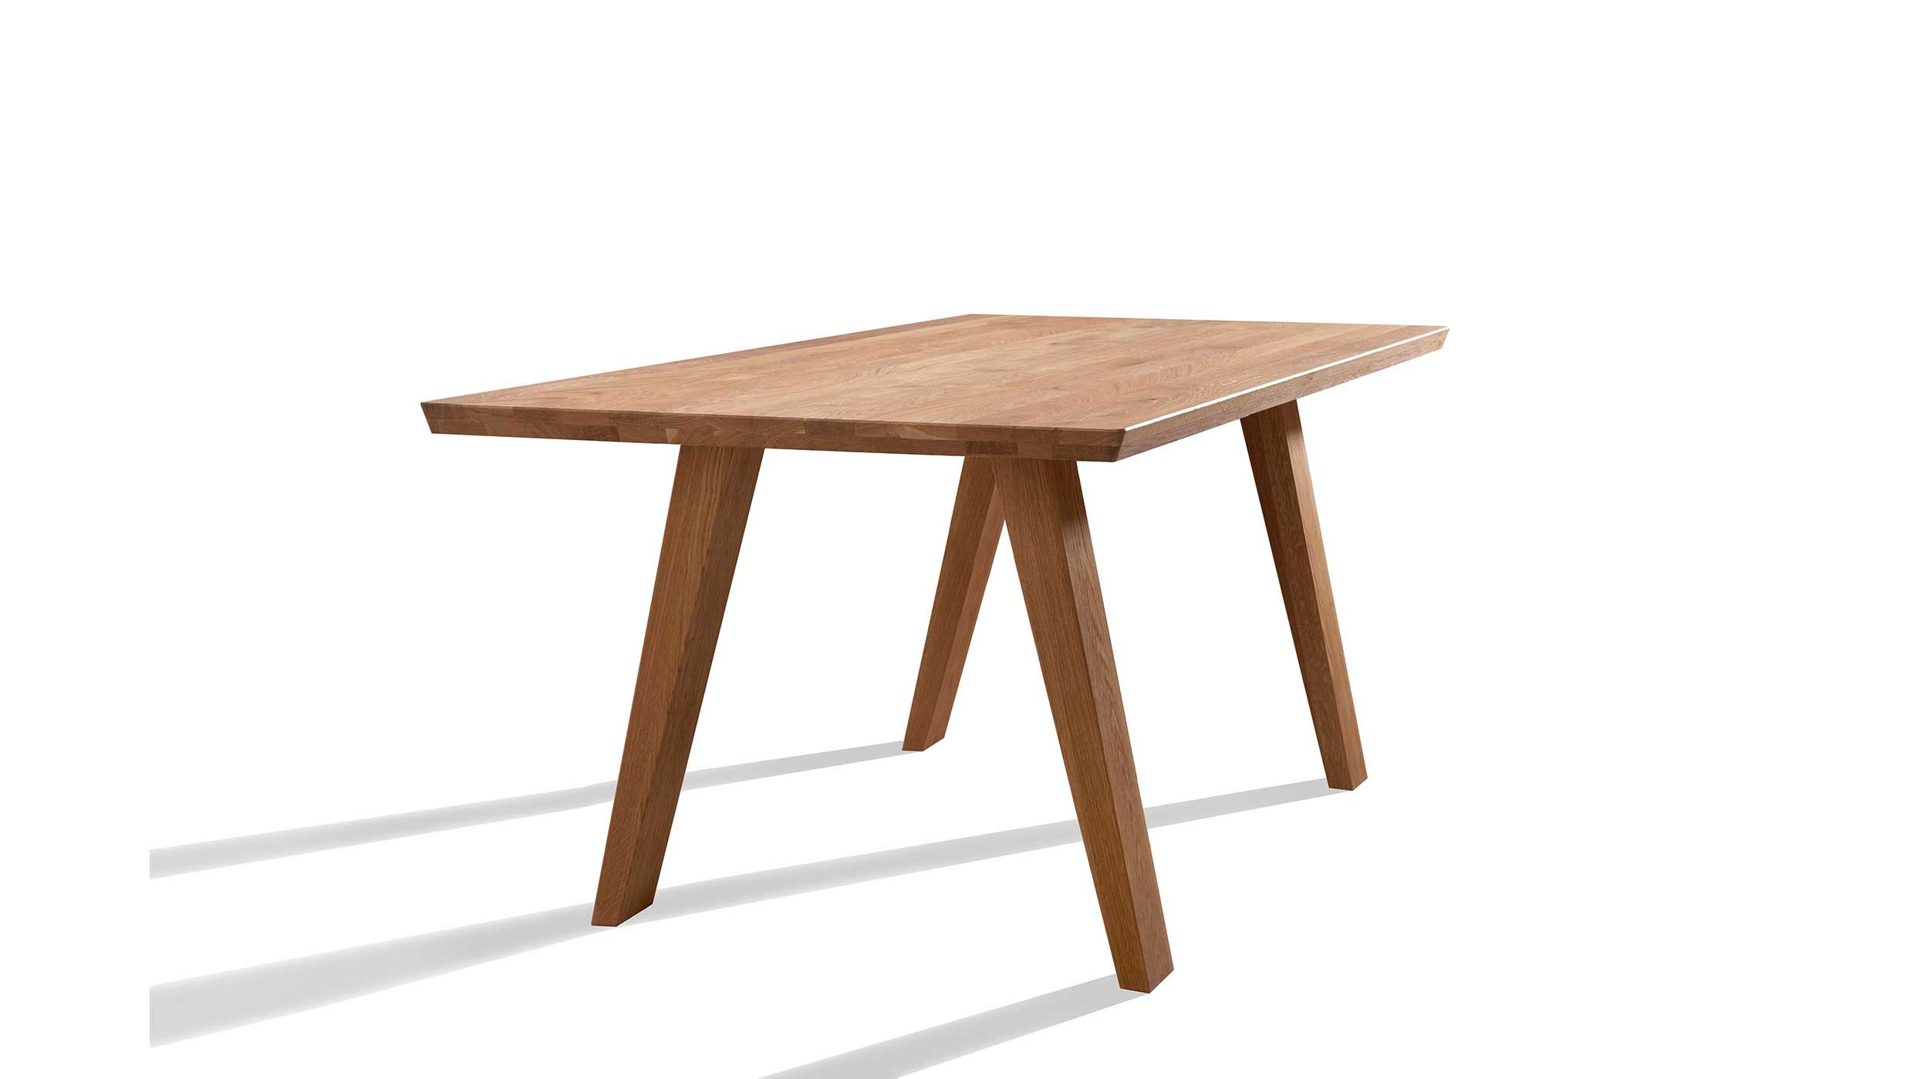 Tisch Gaderform möbel gmbh aus Holz in Eiche Hell Esstisch Tisch Dolomit 160 x 90 cm Eiche (Asteiche) geölt